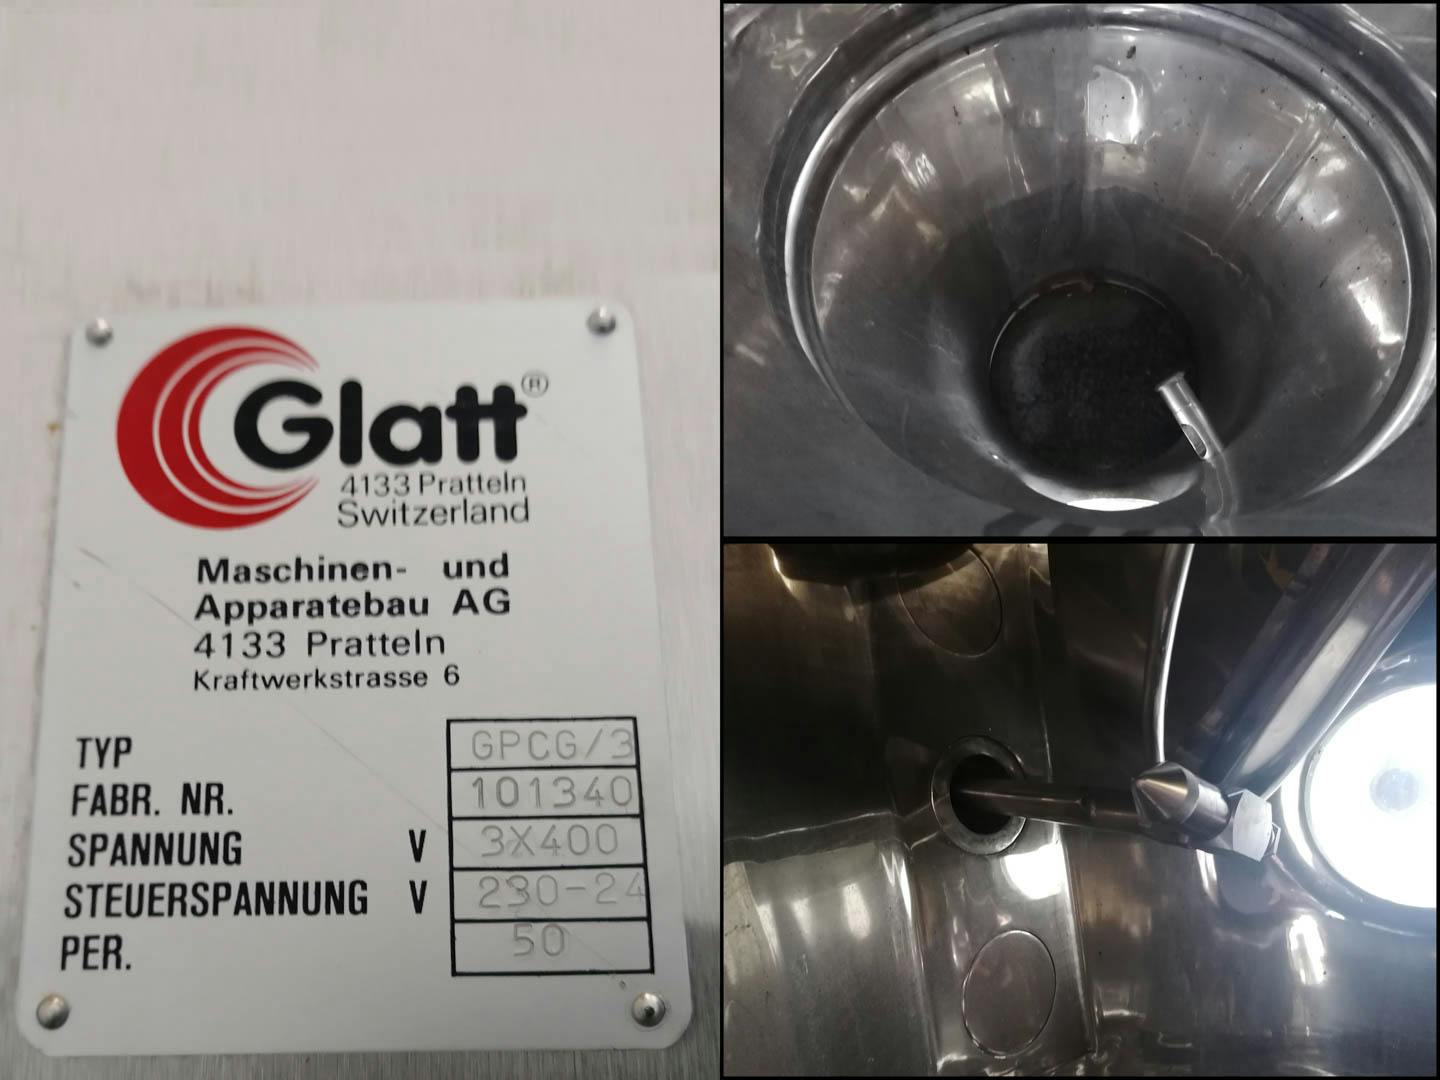 Glatt GPCG/3-15 - Suszarka fluidyzacyjna - suszenie partiami - image 15